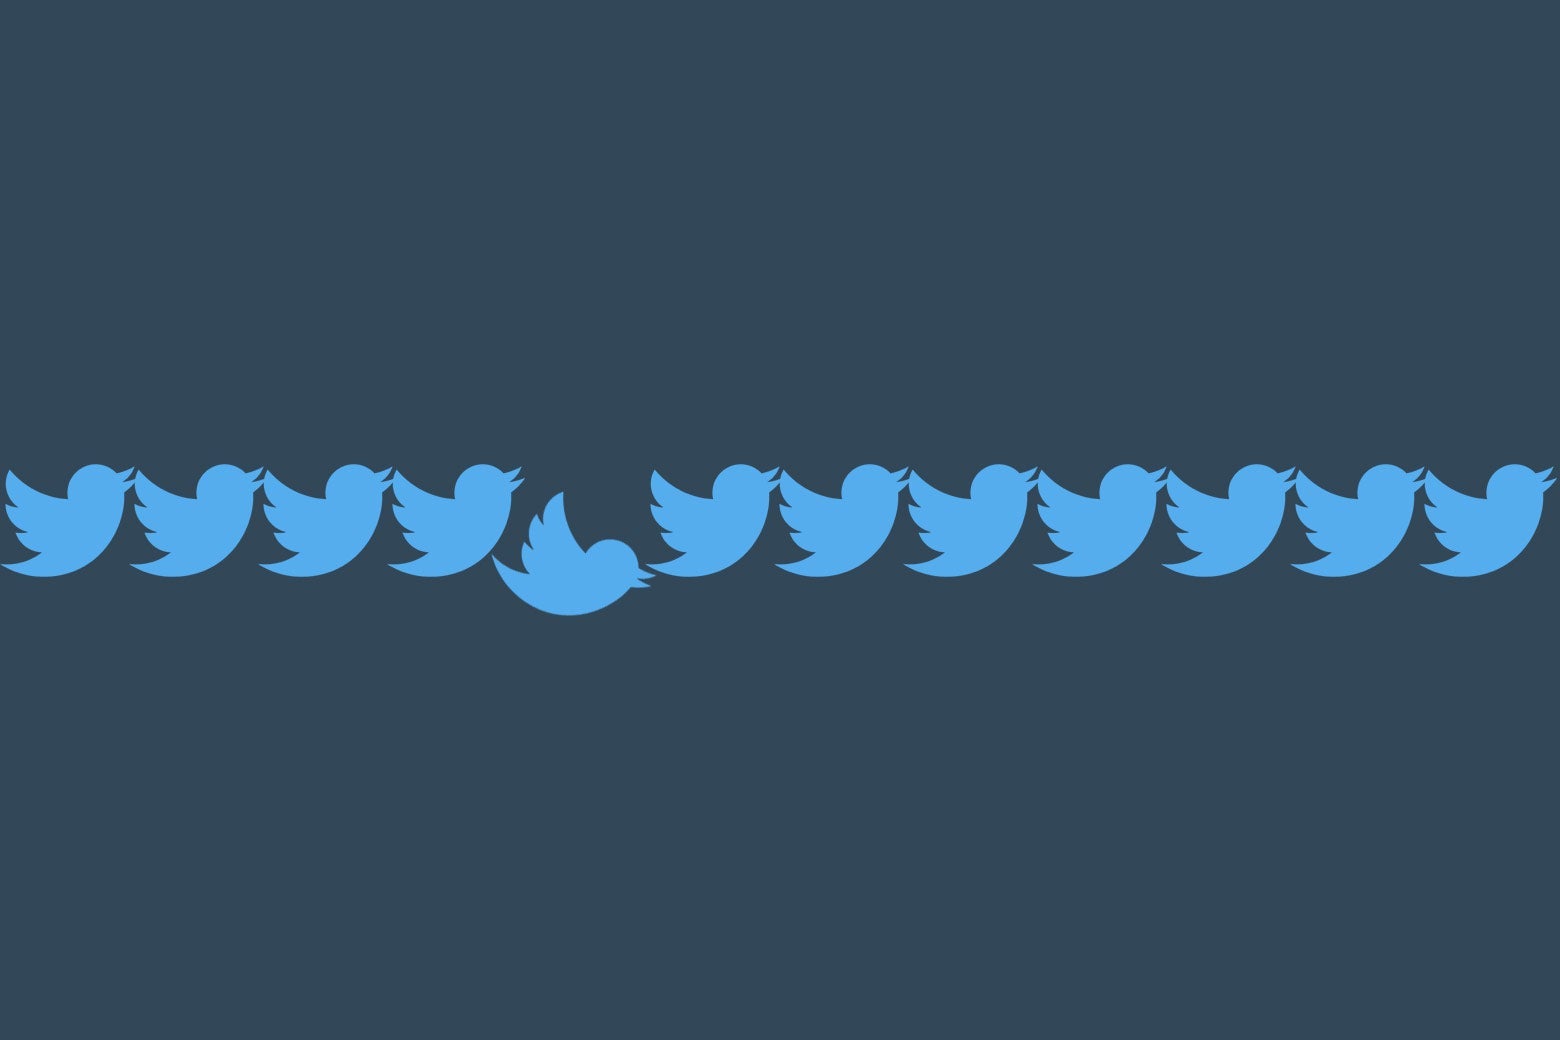 A broken chain of Twitter birds.